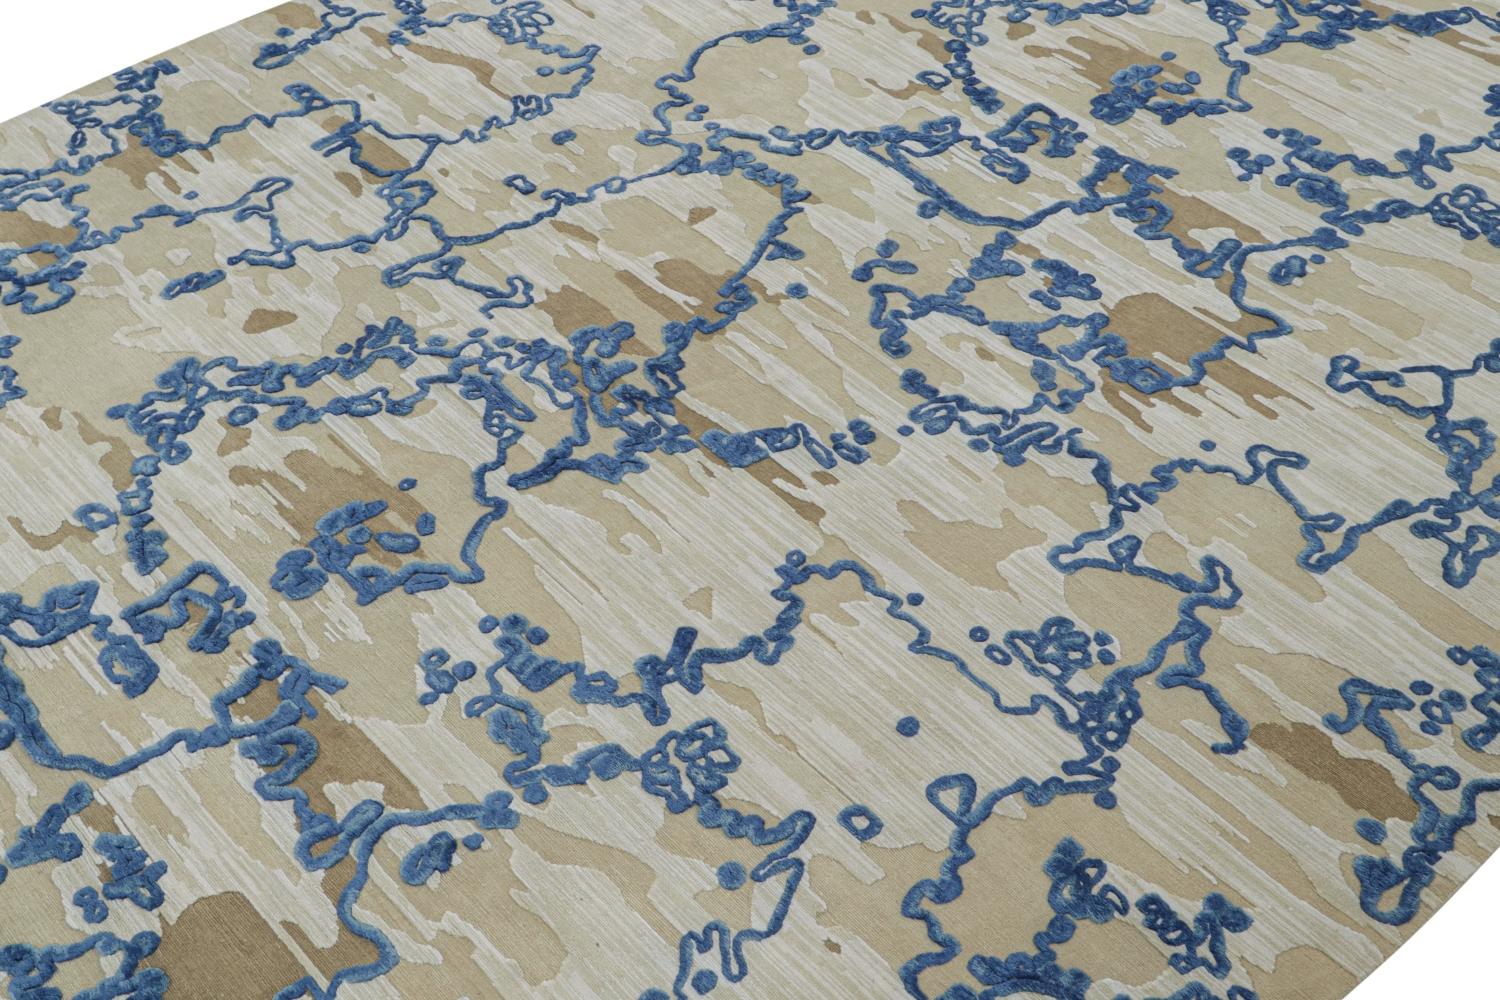 Ce design de tapis personnalisé est un nouvel ajout audacieux à la Collection Modern de Rug & Kilim.

Sur le Design : 

Ces photos représentent un tapis 10x15 dans ce design, noué à la main en laine et soie avec une forme irrégulière. Sa texture